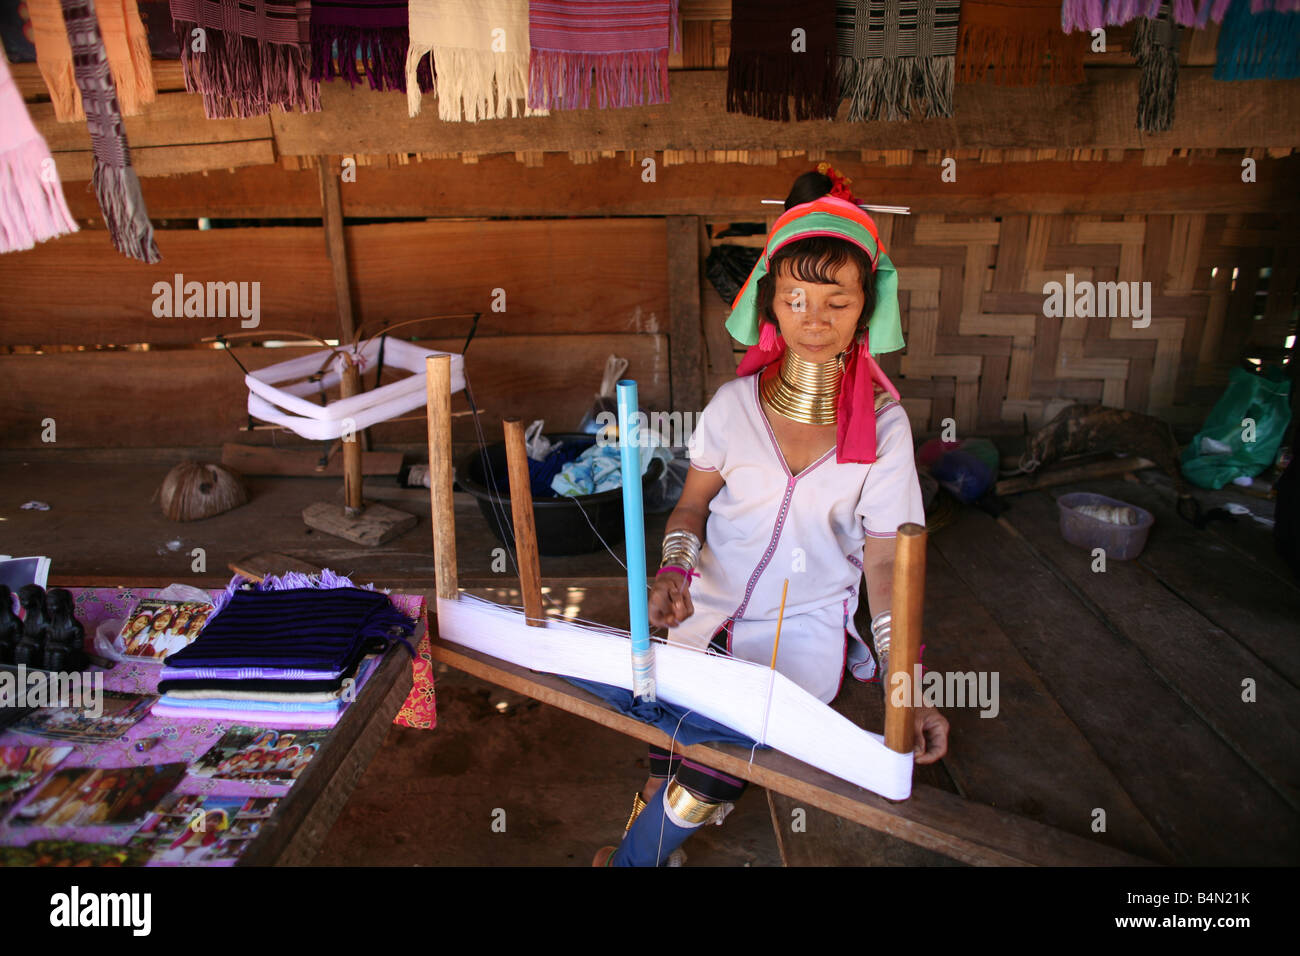 Eine Longneck Frau weben ca. 300 birmanischen Flüchtlinge in Thailand Mitglieder der indigenen Gruppe bekannt sind als die Longnecks, die größte der drei Dörfer wo live Longnecks Nai Soi genannt befindet sich in der Nähe von Mae Hong Son Stadt longnecks, Metall tragen Ringe auf den Hals, die das Schlüsselbein fertig drücken und verlängern den Hals sind sie eine touristische Attraktion, die Touristen besuchen Nai Soi zu fotografieren die Longnecks und kaufen ihre Handarbeiten, die, denen die Dörfer von kritisiert werden Organisationen der menschlichen Rechte als menschliche zoos Stockfoto